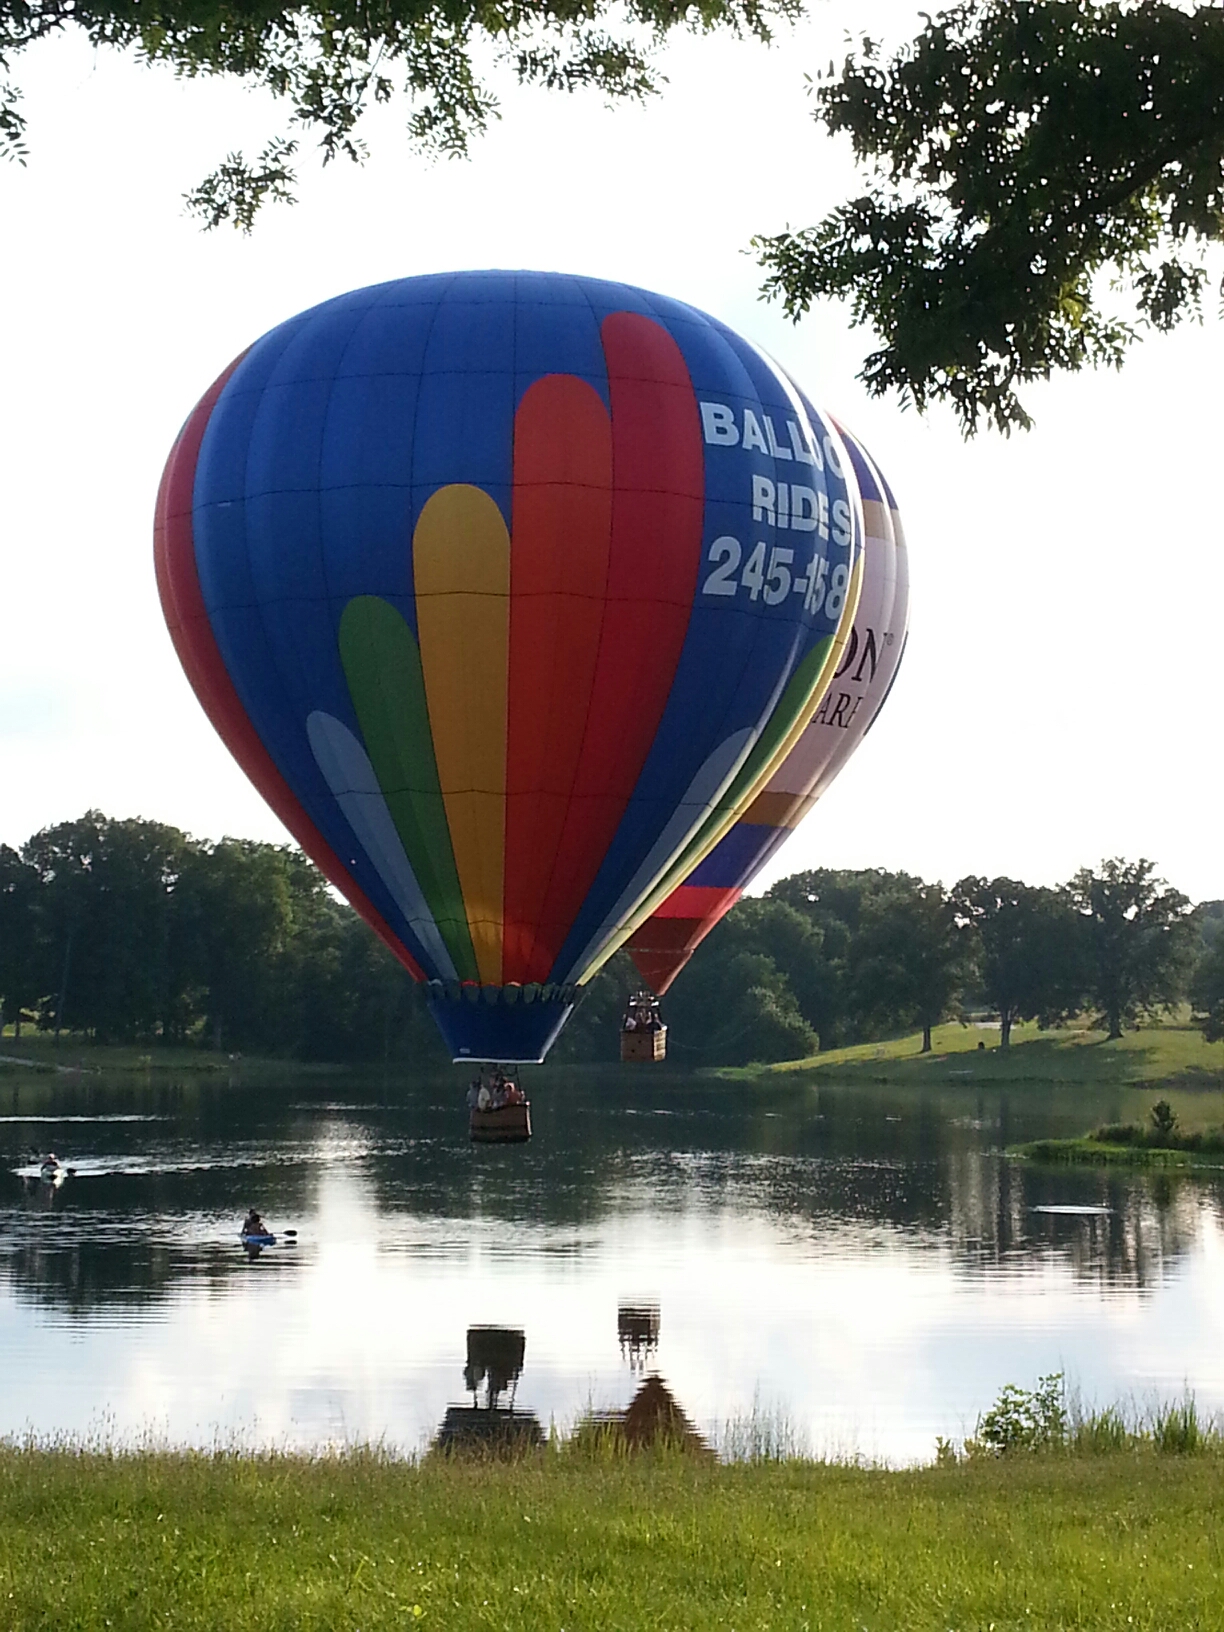 When Do You Fly Hot Air Balloons?